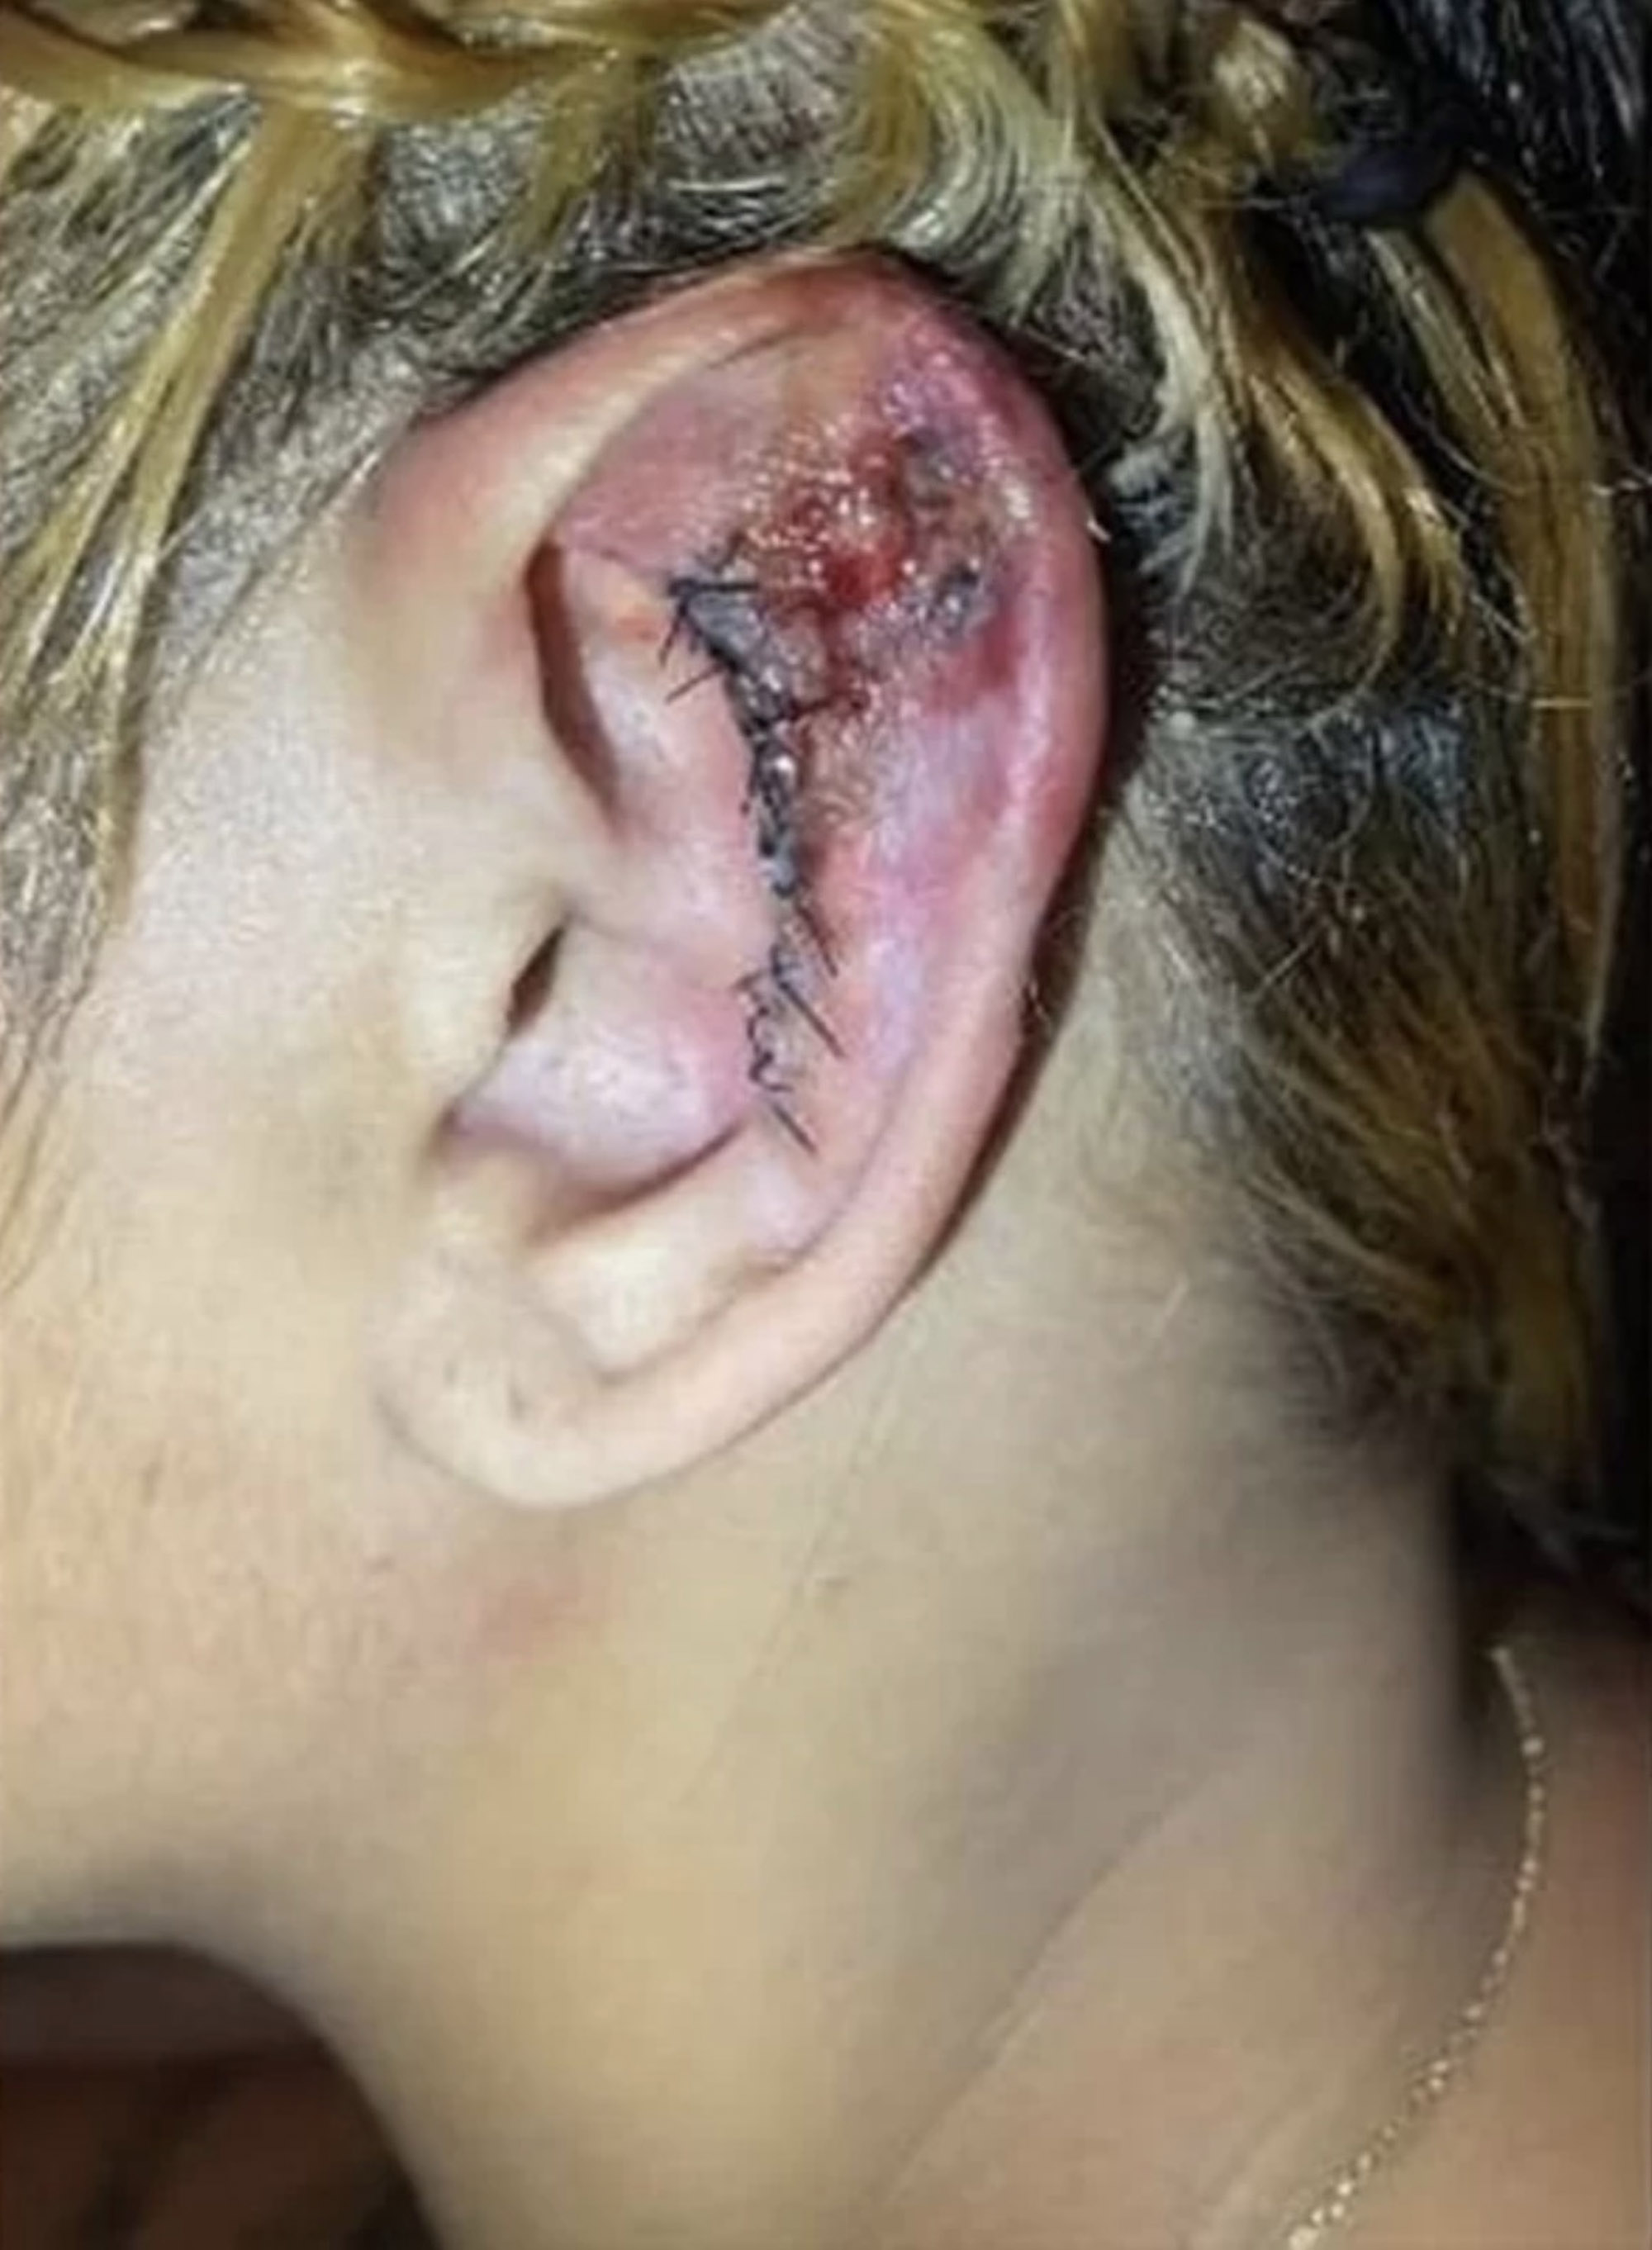 Das Ohr einer Frau sieht neben dicken Nähten, die Berichten zufolge nach einem Eingriff in der Klinik entstanden sind, völlig entzündet aus